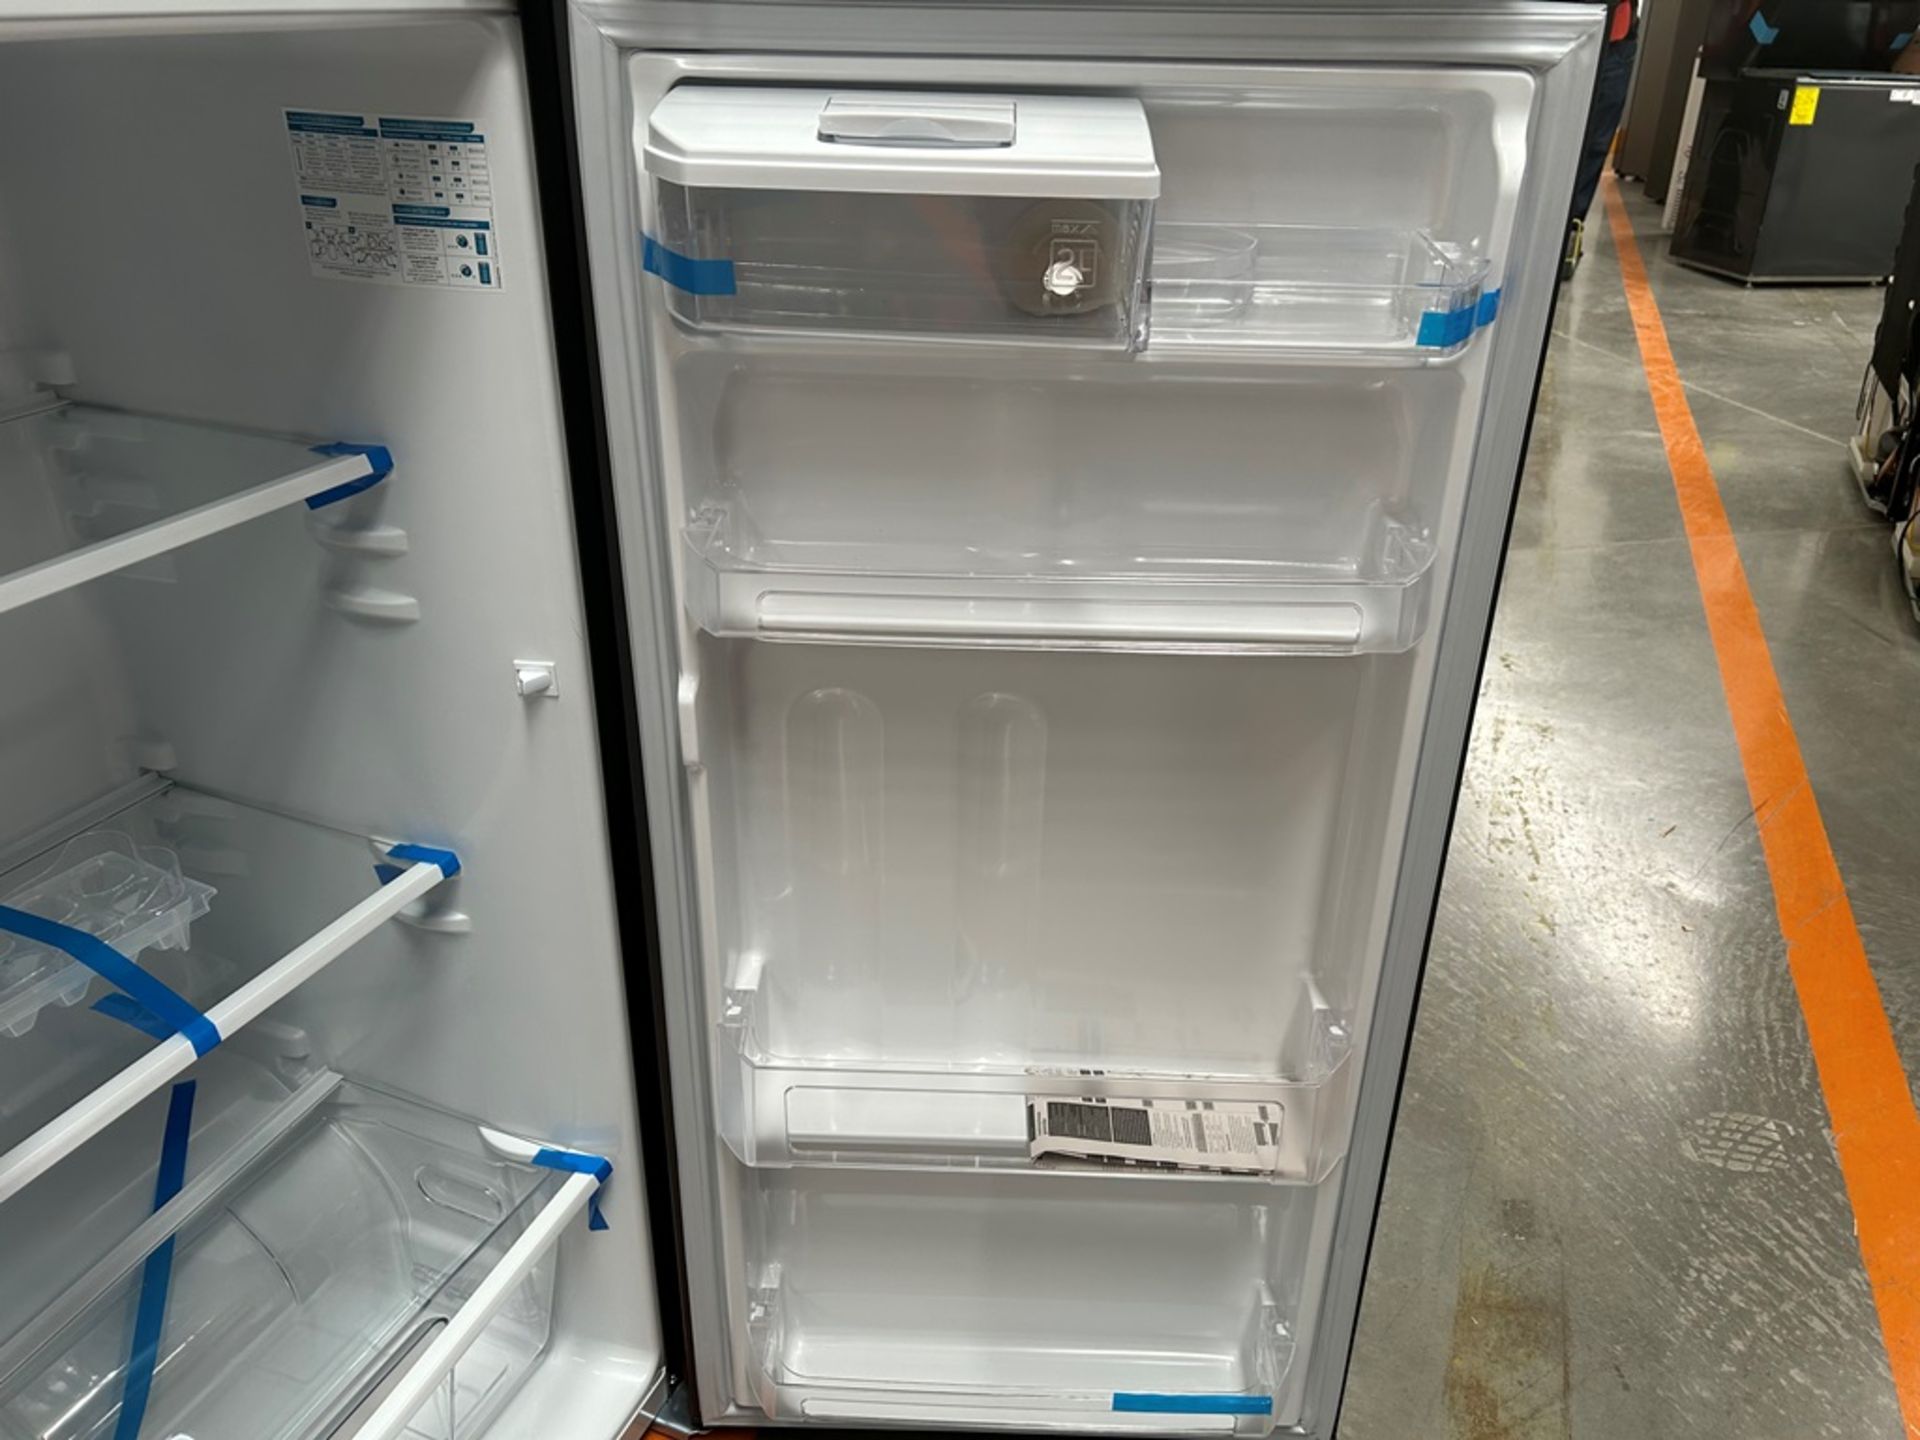 Lote de 2 refrigeradores contiene: 1 refrigerador Marca MABE, Modelo RME360FVMRMA, Serie 816455, Co - Image 8 of 18